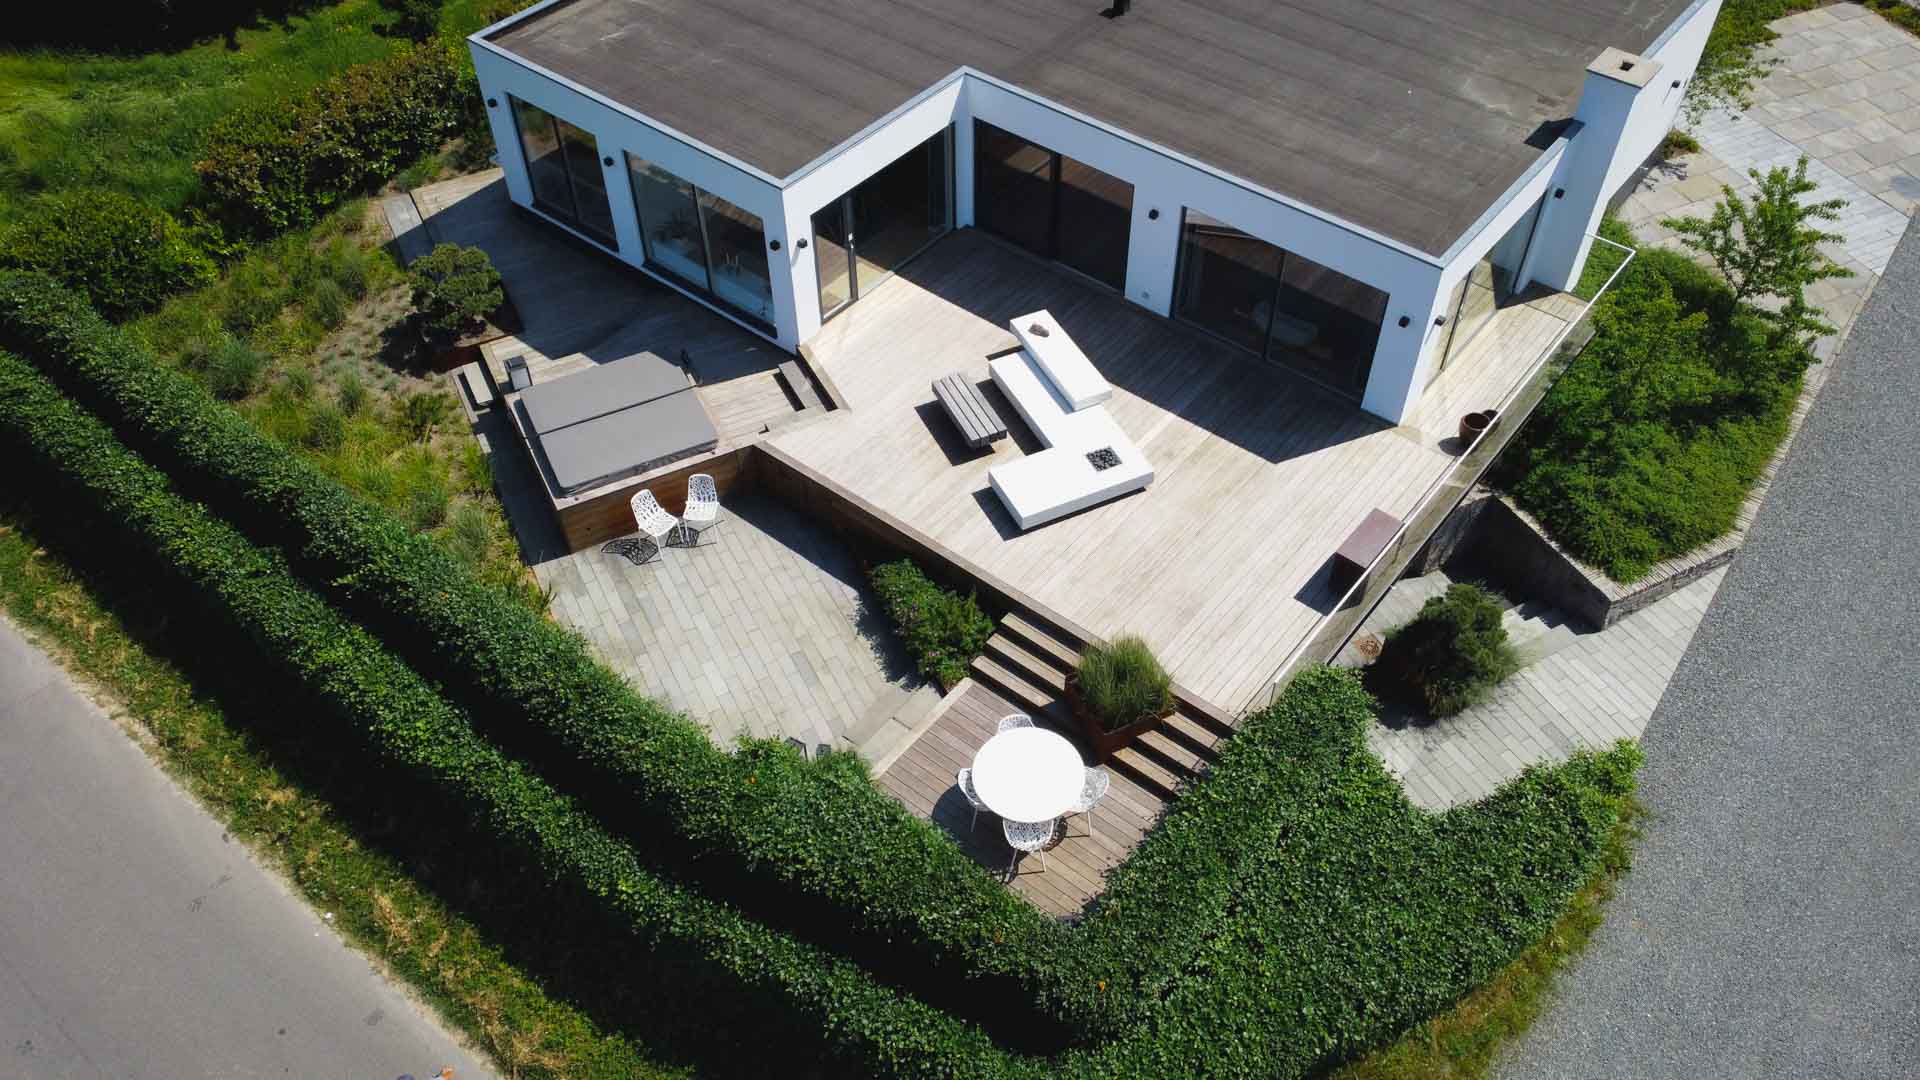 Hævet terrasse – inspiration: Se 3 unikke løsninger på hævede terrasser